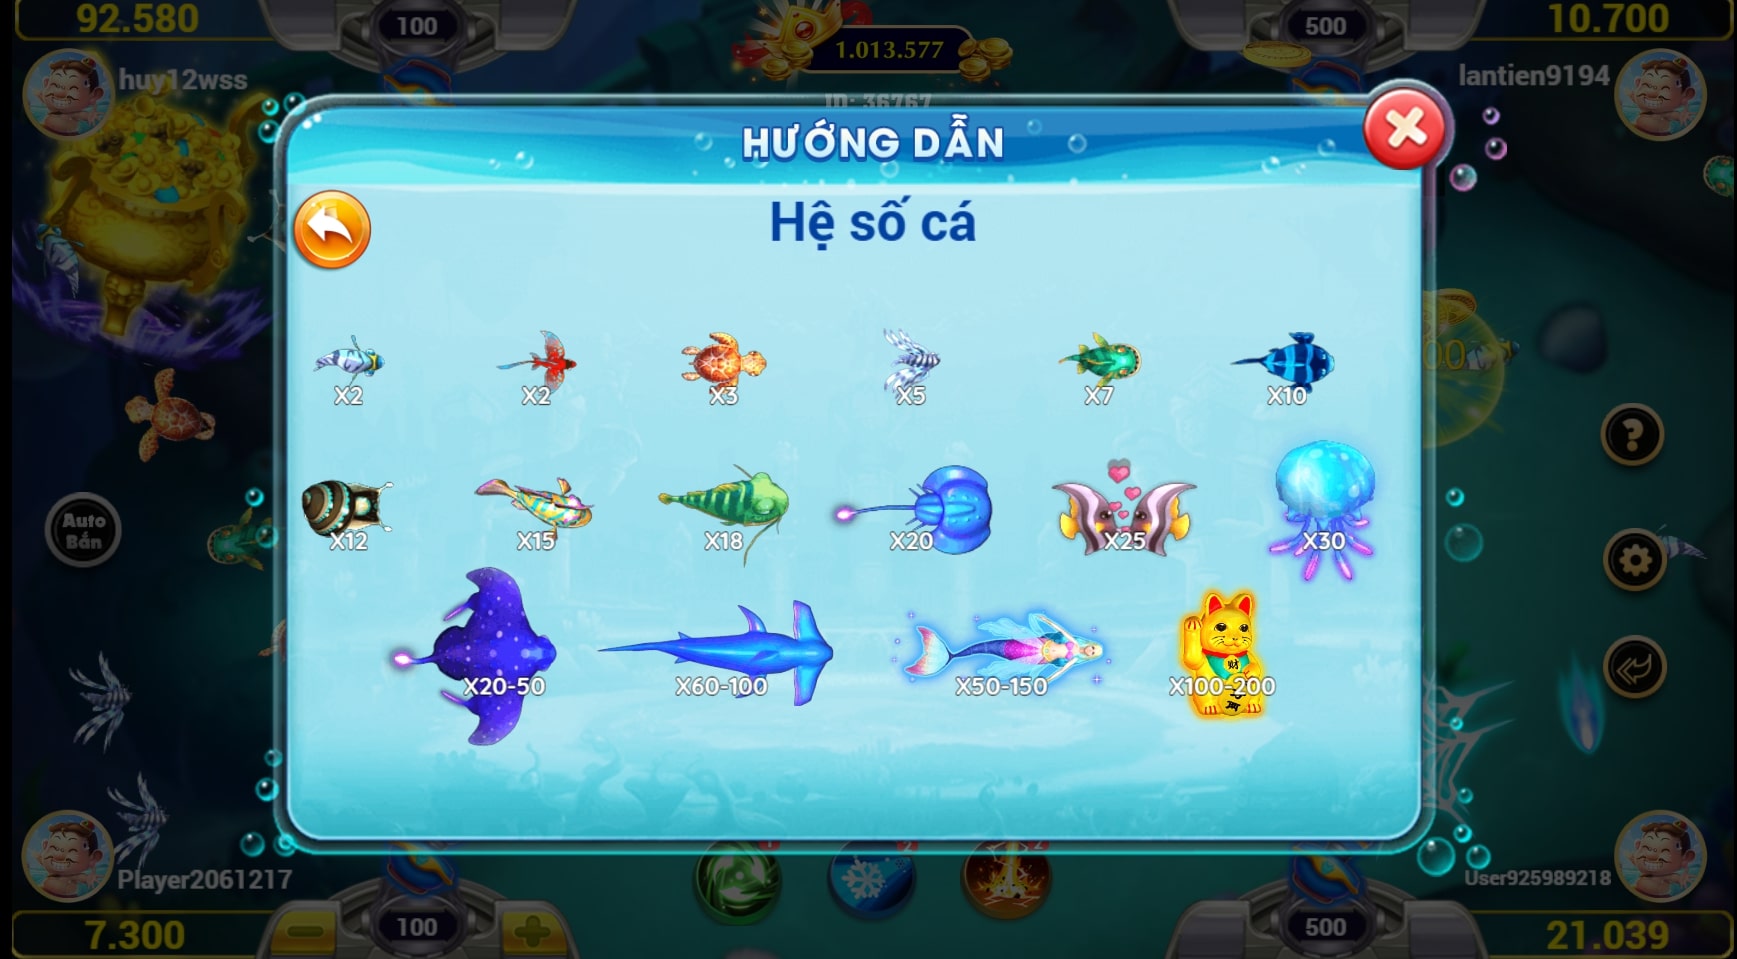 Hệ số cá trong game bắn cá vip